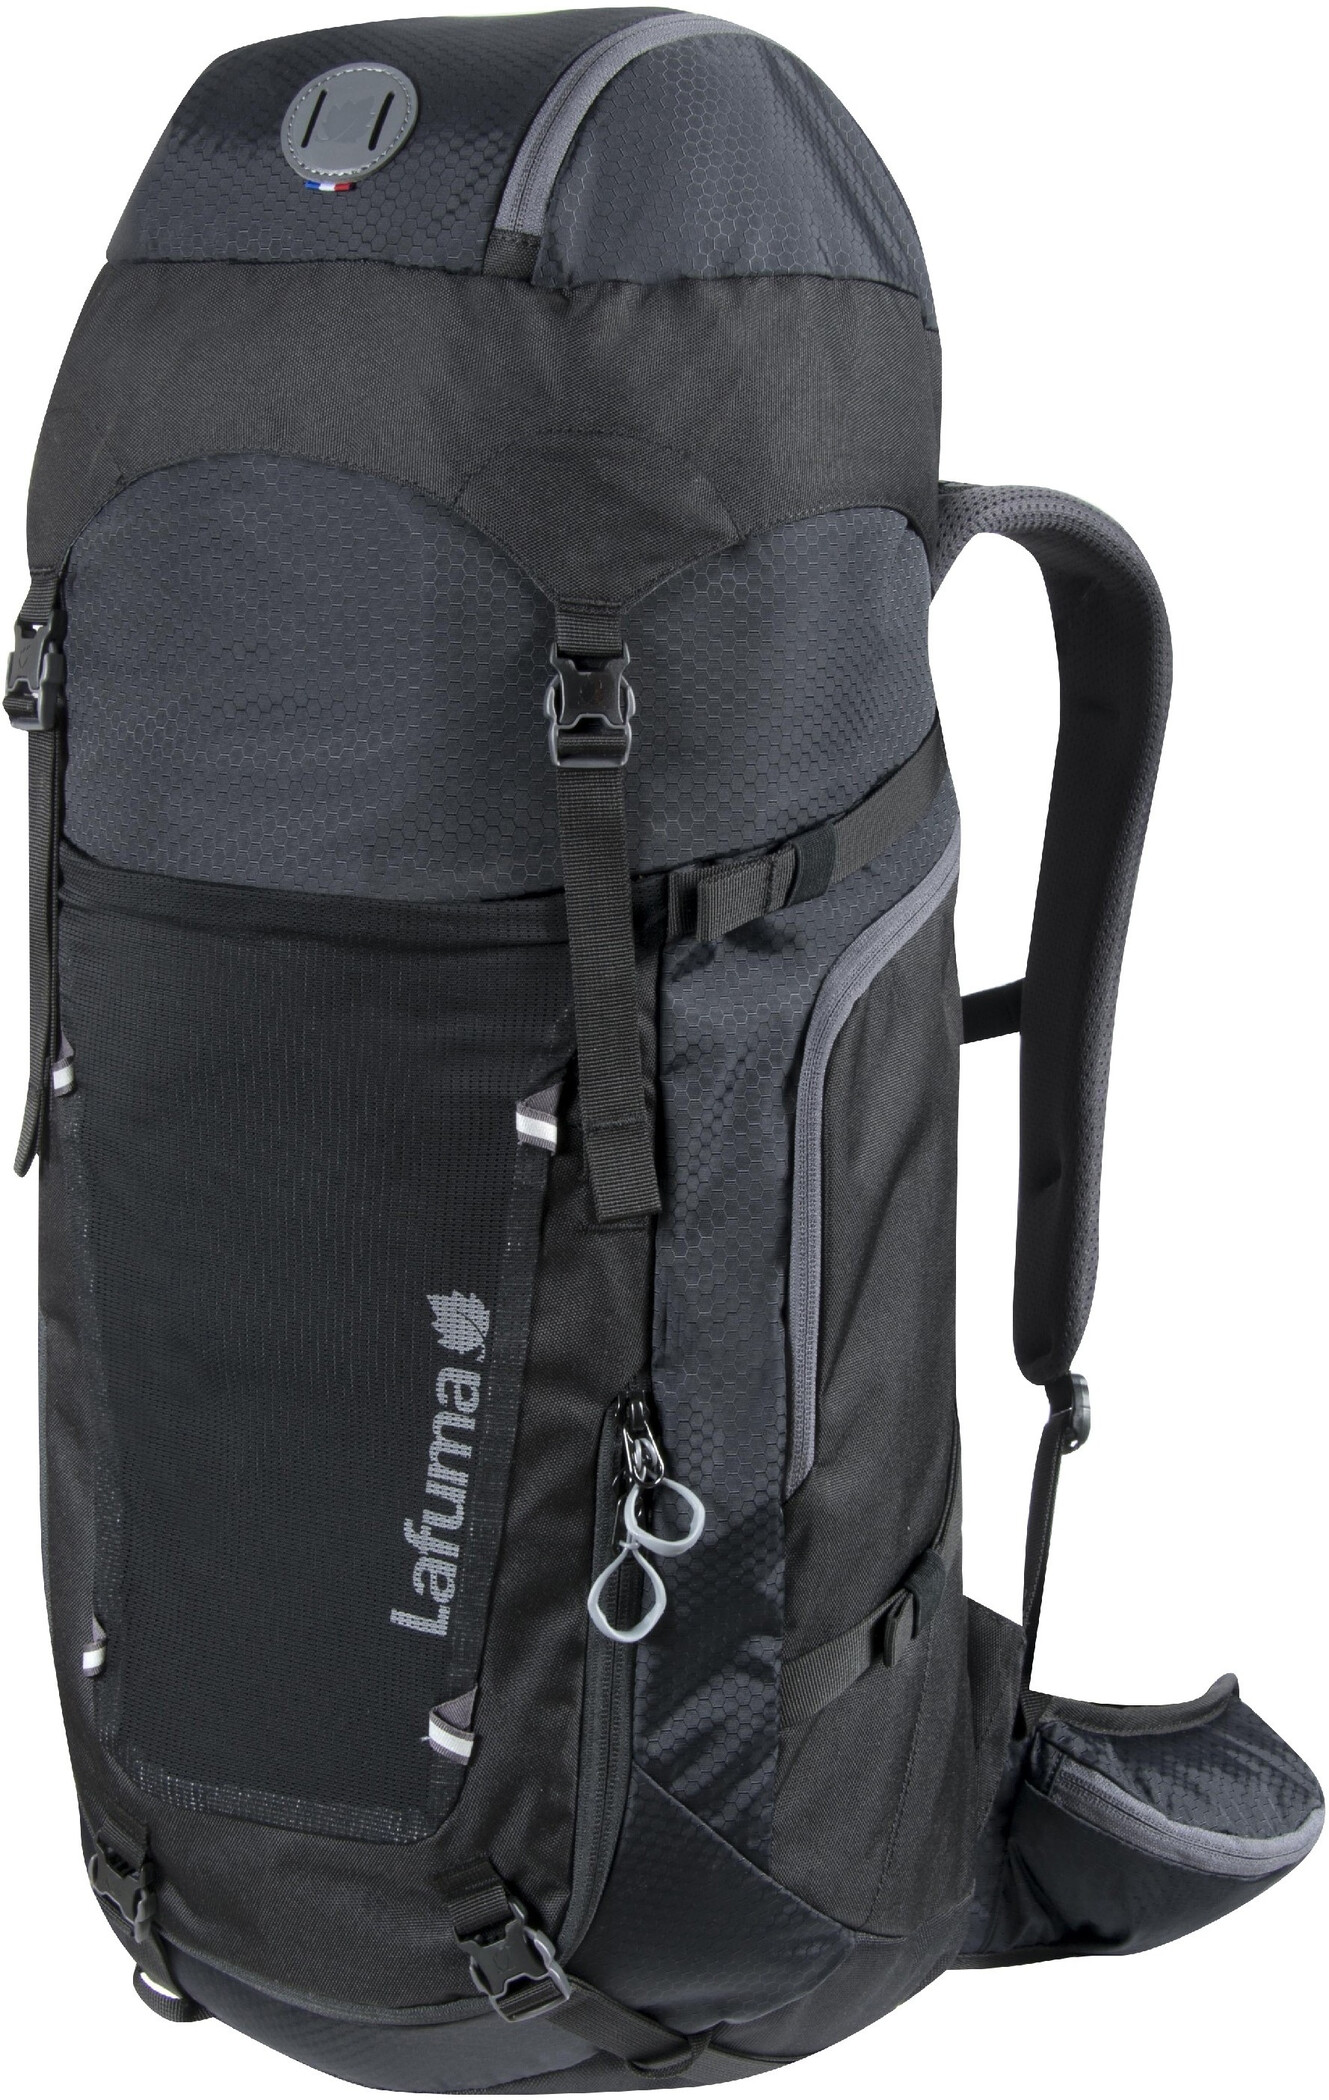 lafuma-access-40-backpack-black-noir-1.jpg